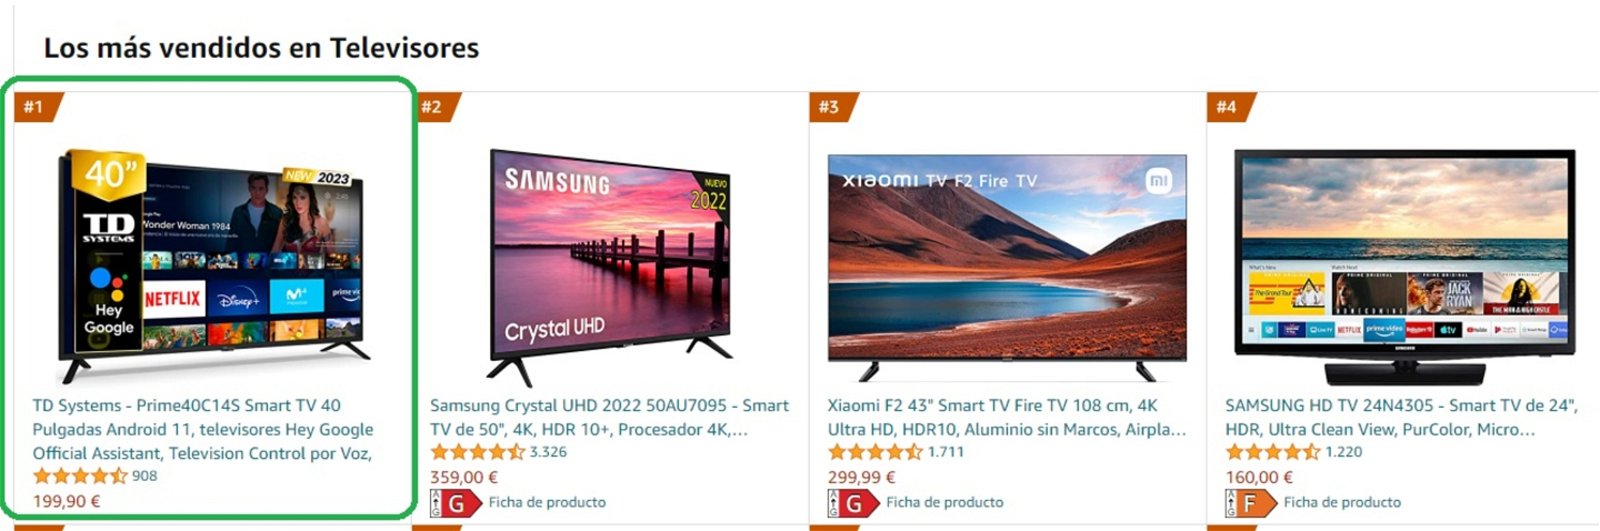 smart tvs mas vendidas